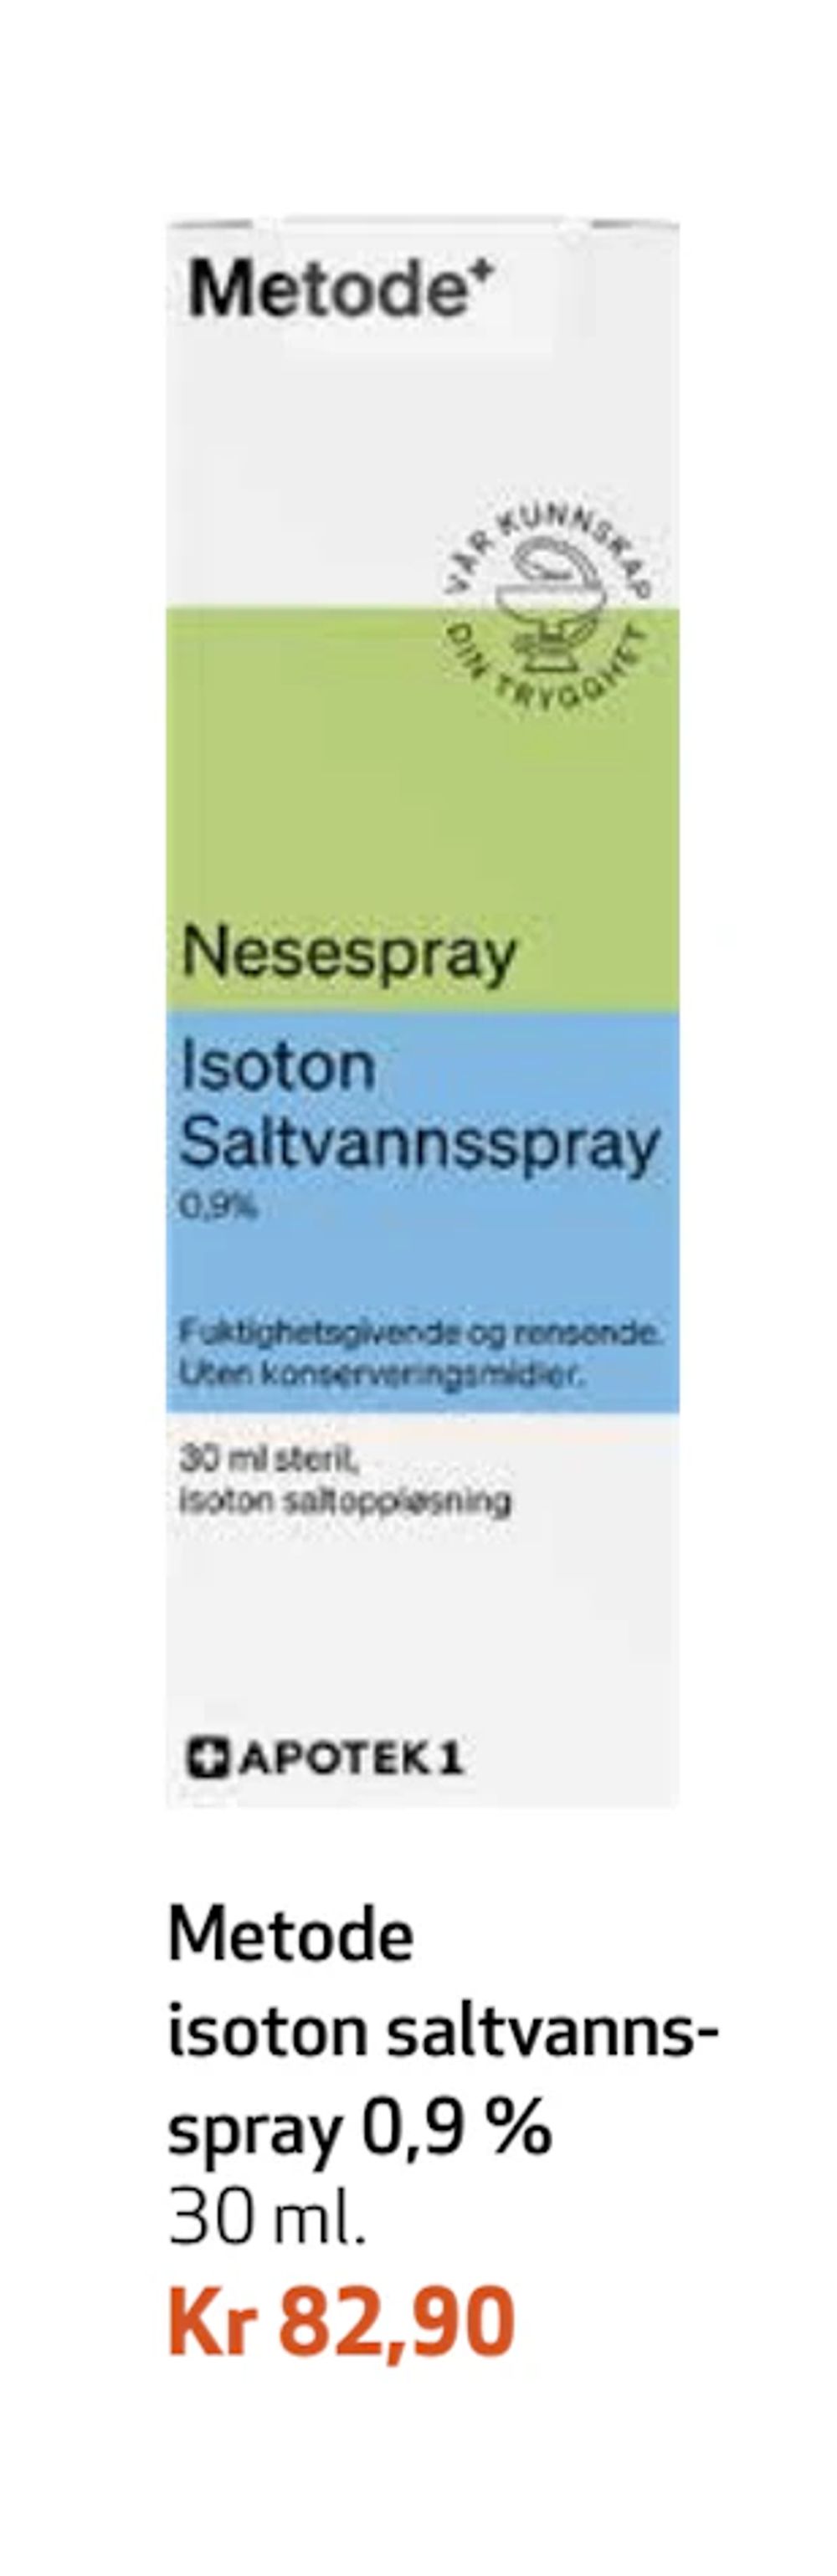 Tilbud på Metode isoton saltvannsspray 0,9 % fra Apotek 1 til 82,90 kr